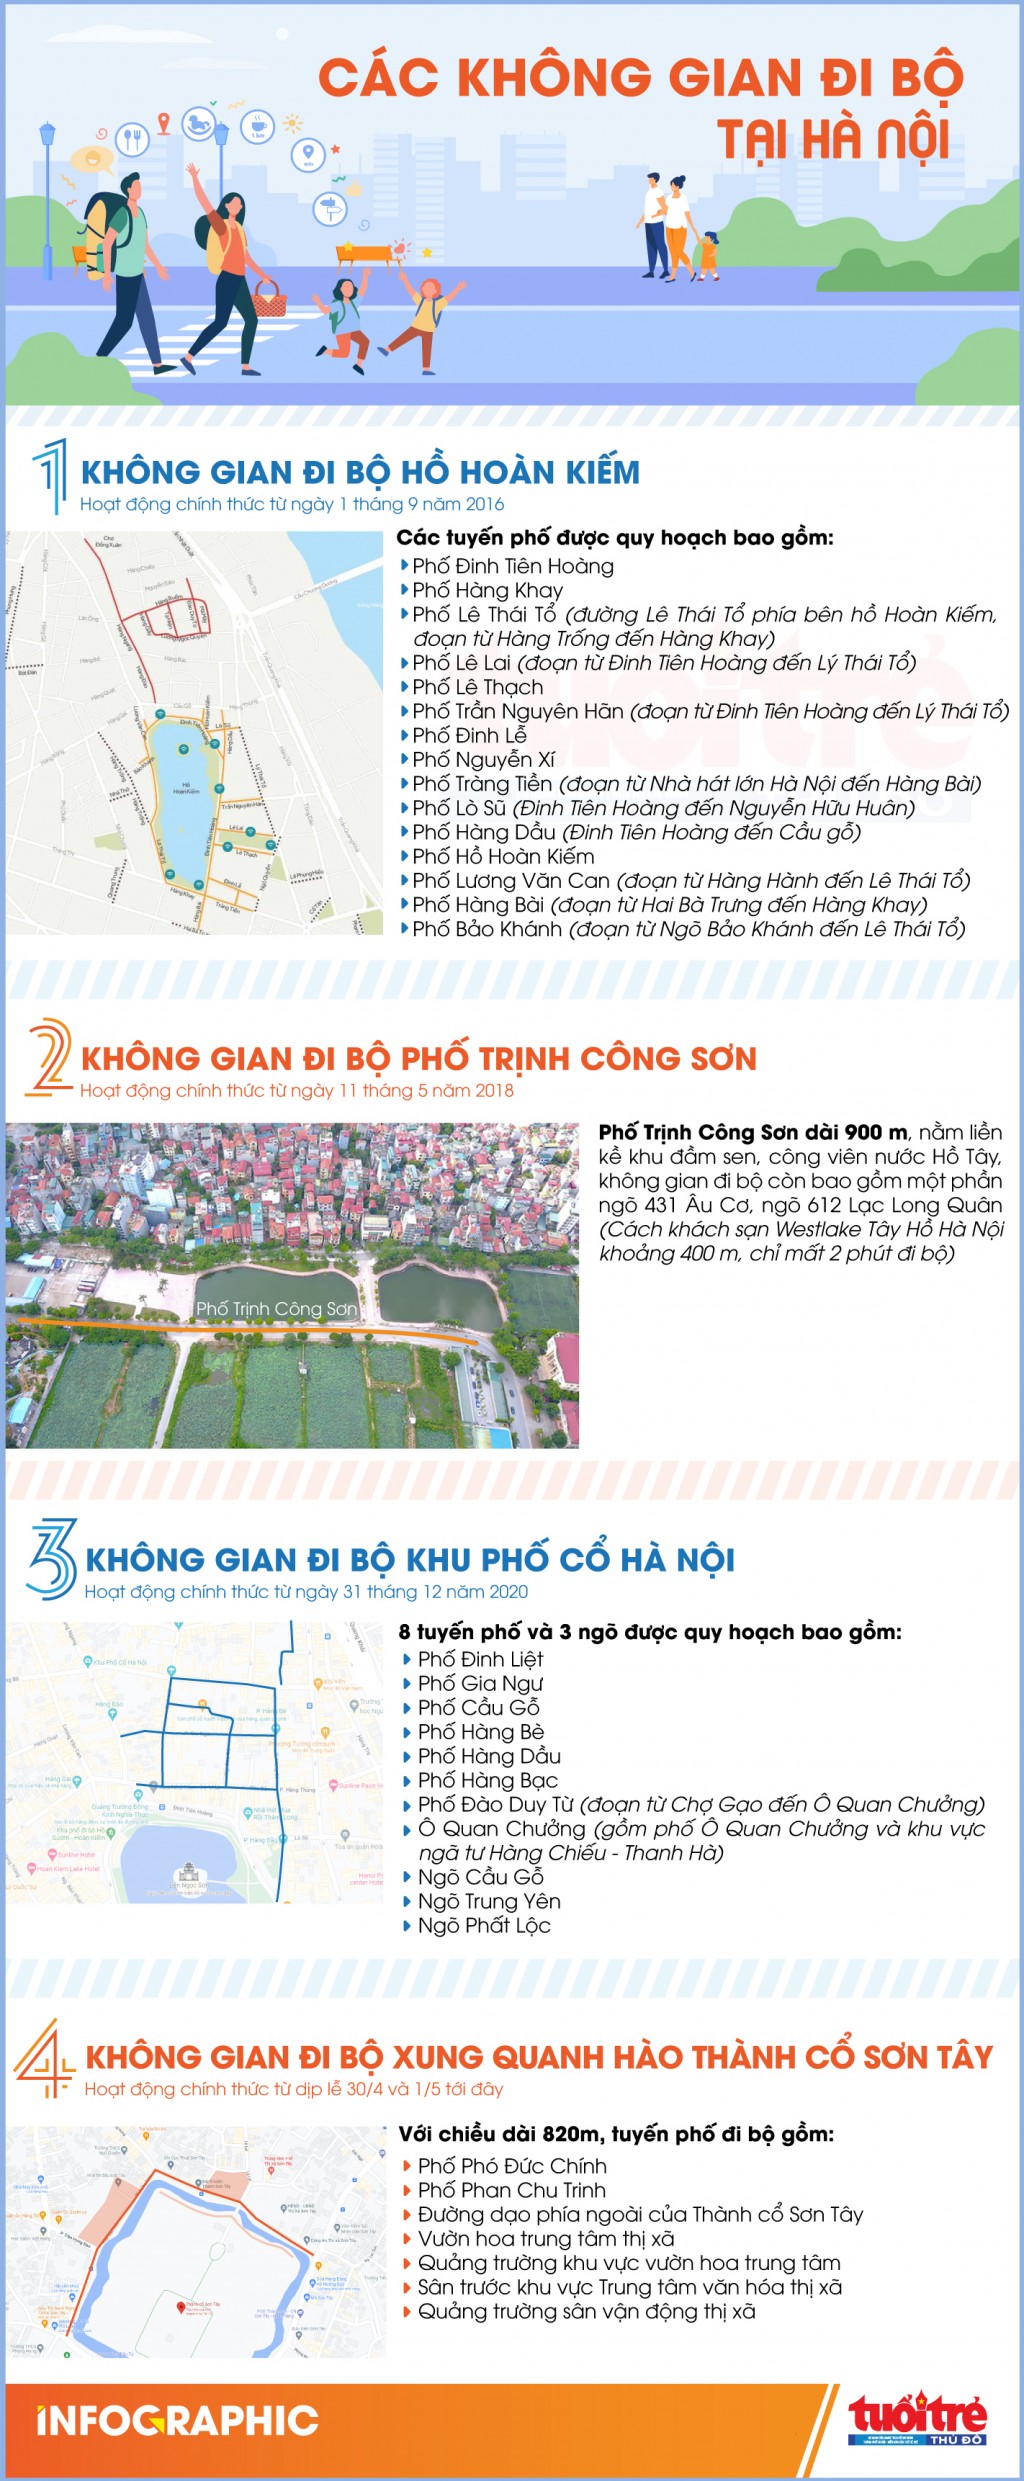 Hà Nội sắp có thêm tuyến phố đi bộ thứ 4